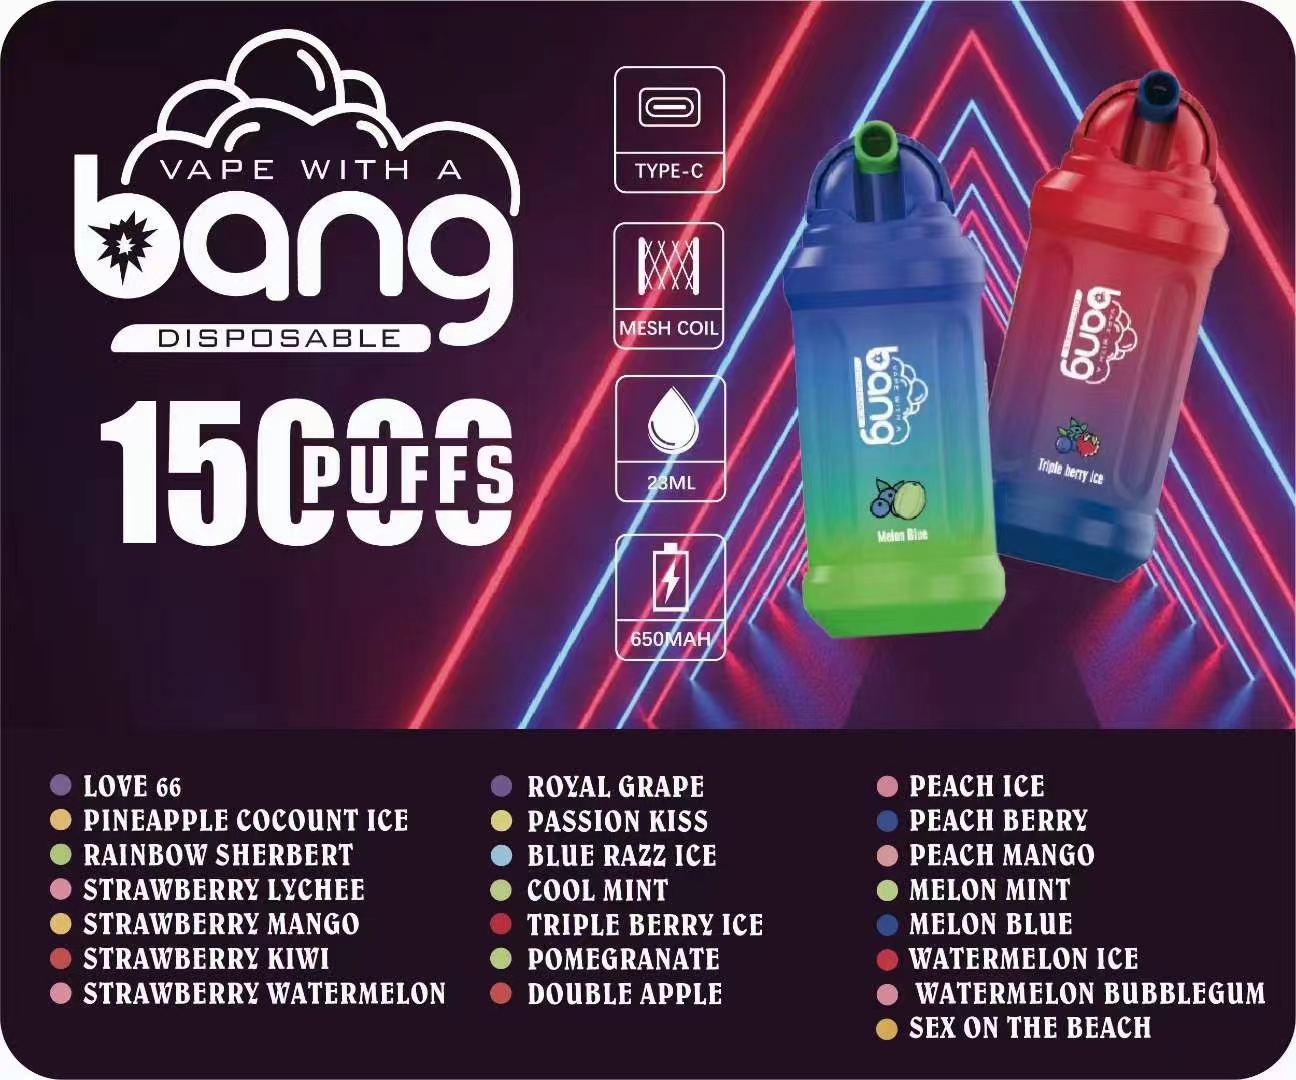 Originele BANG 15000puff wegwerpbare vape-vormige flip-waterfles model oplaadbaar - C-type 23 ml e-vloeistofcapaciteit, nicotinegehalte 0% 2% 3% 5% 15K mesh-spoelbatterij 650mAh